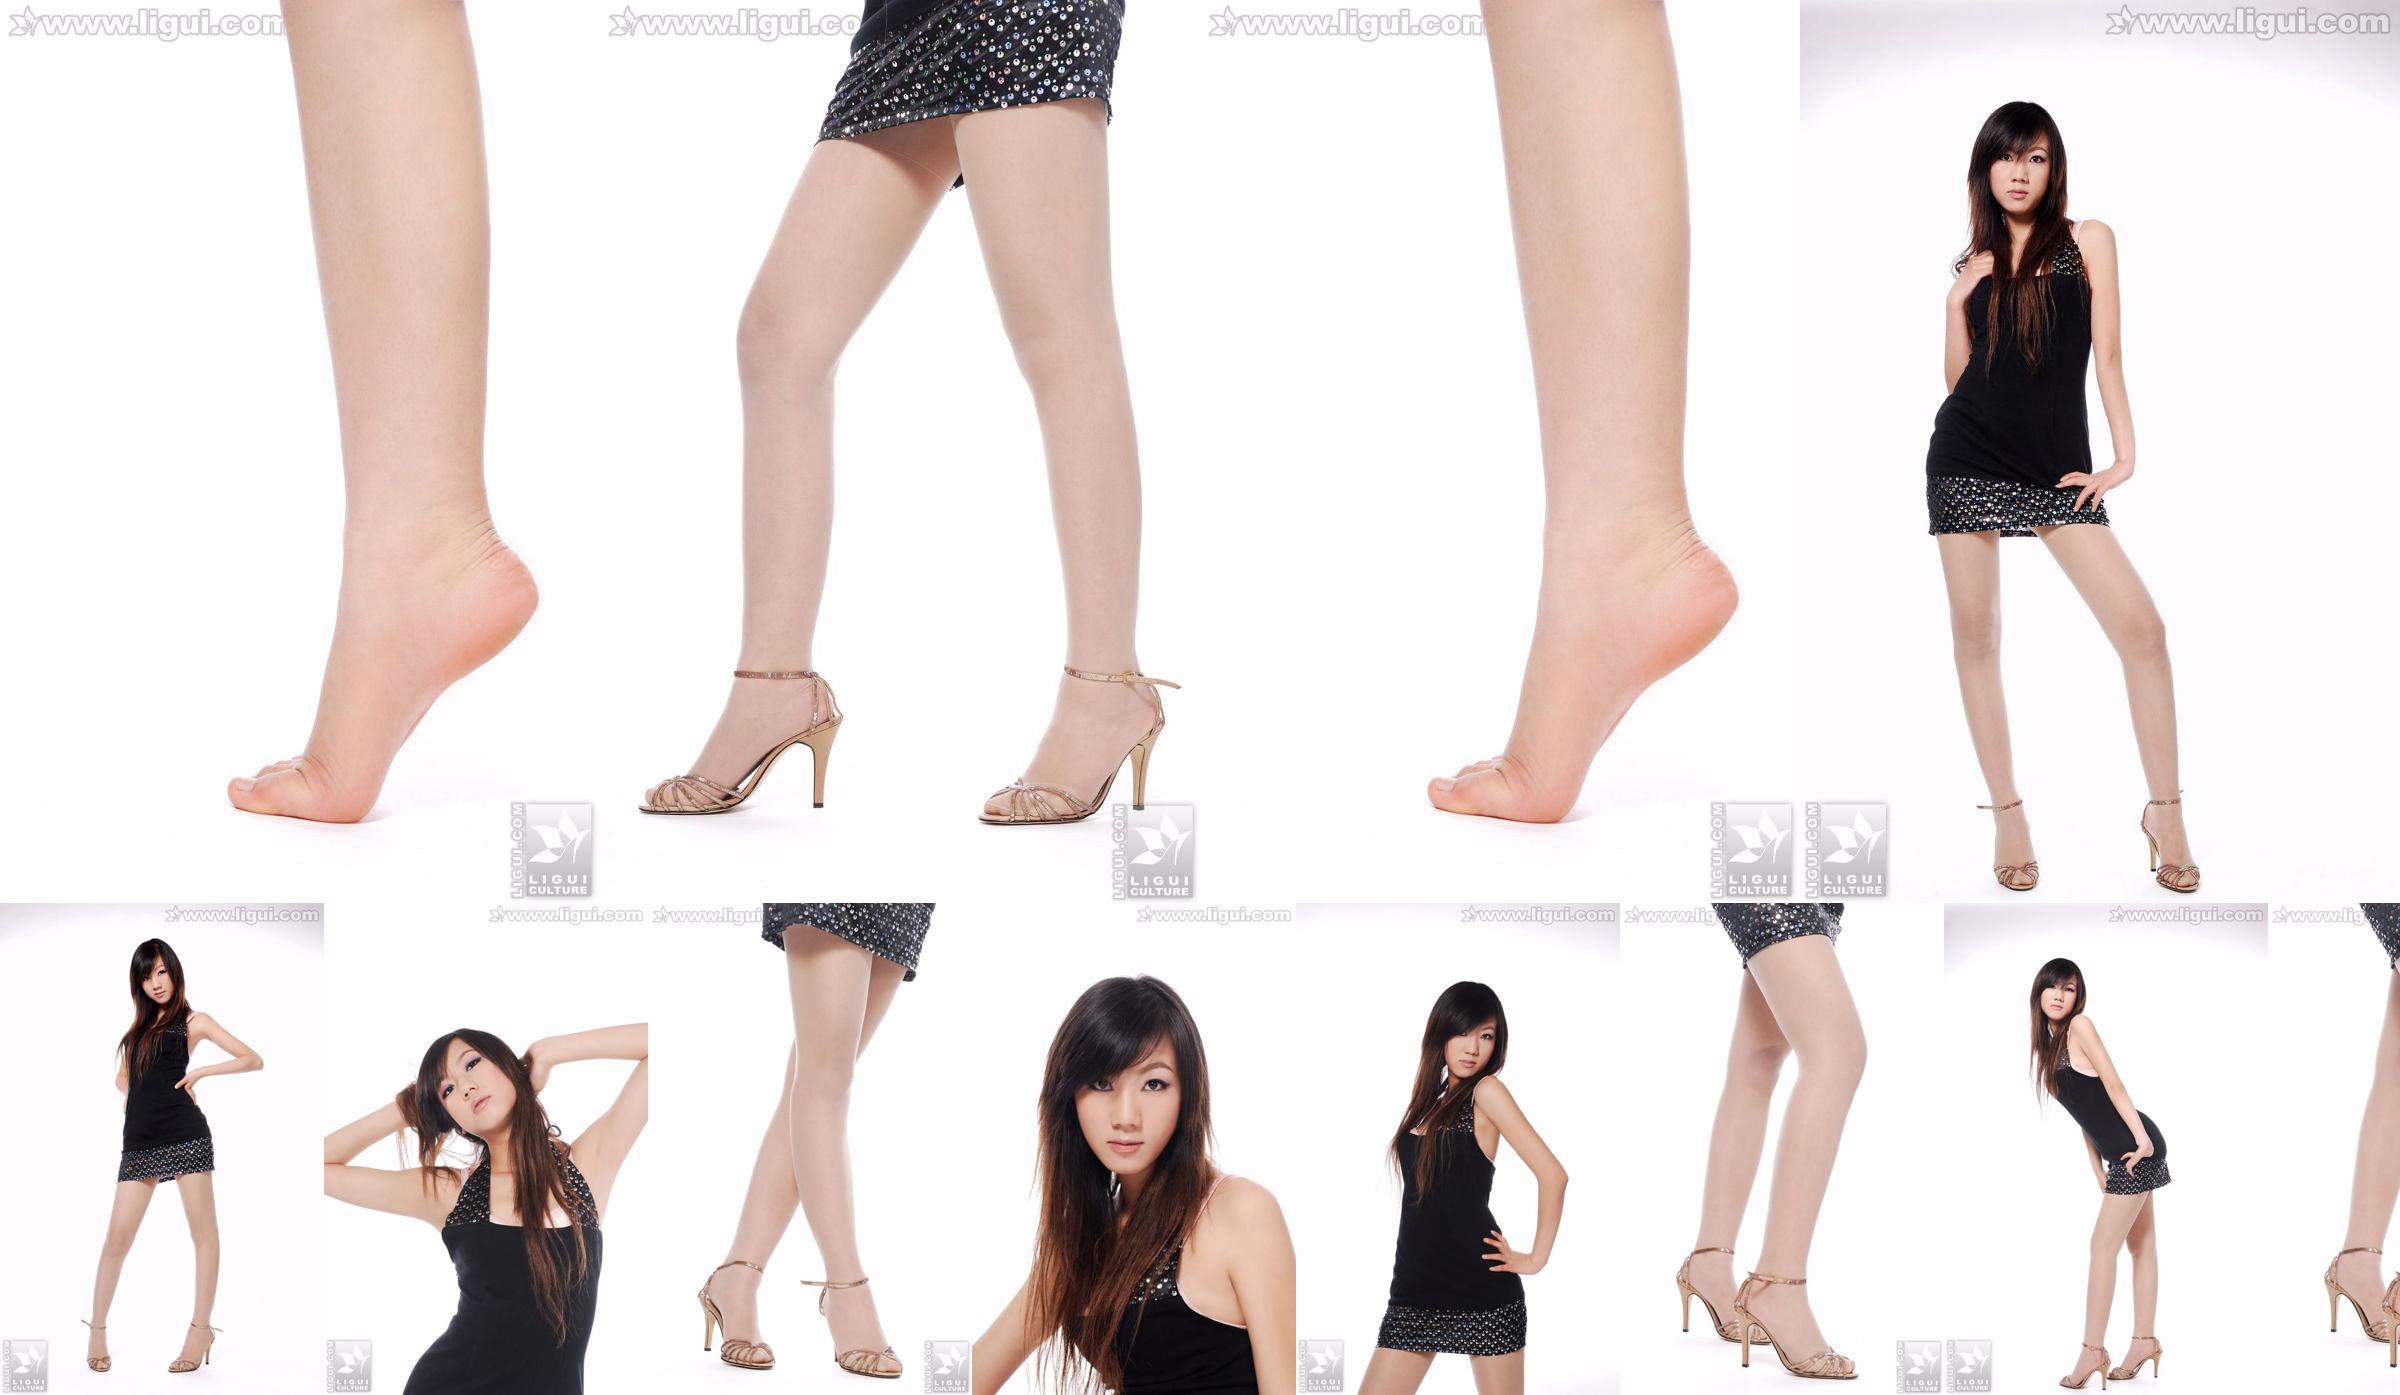 Người mẫu Sheng Chao "Giày cao gót ngọc xinh show mới" [Sheng LiGui] Ảnh chụp chân dài ngọc nữ xinh đẹp No.445b38 Trang 6